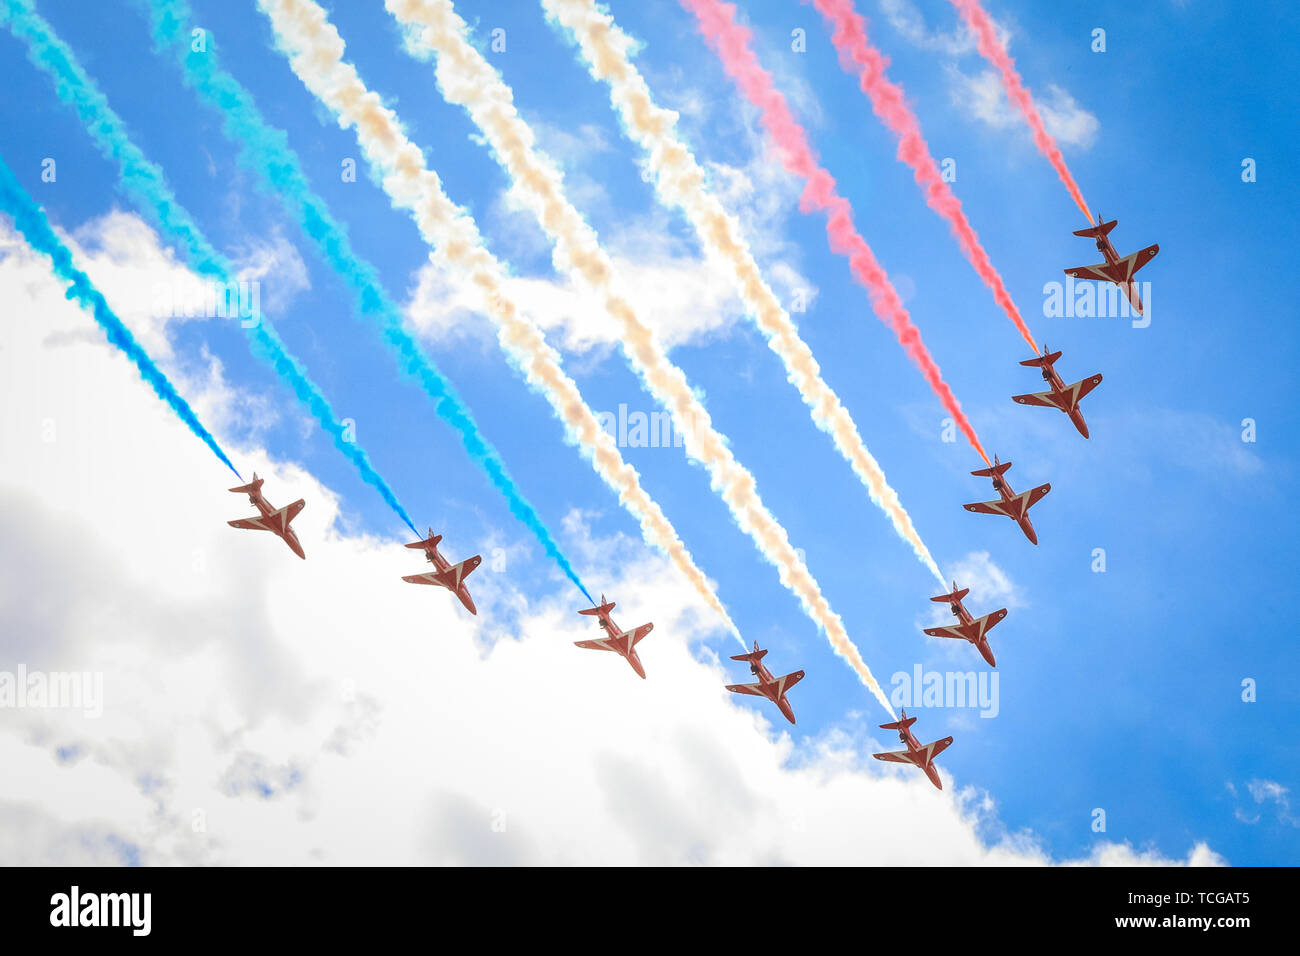 Trafalgar Square, London, Großbritannien, 08. Juni 2019. Die roten Pfeile für die Queen's Birthday Parade, Trooping the Color, Flypast (fliegen vorbei oder fliegen über) gegen den blauen sonnigen Himmel, vom Trafalgar Square aus gesehen. Stockfoto